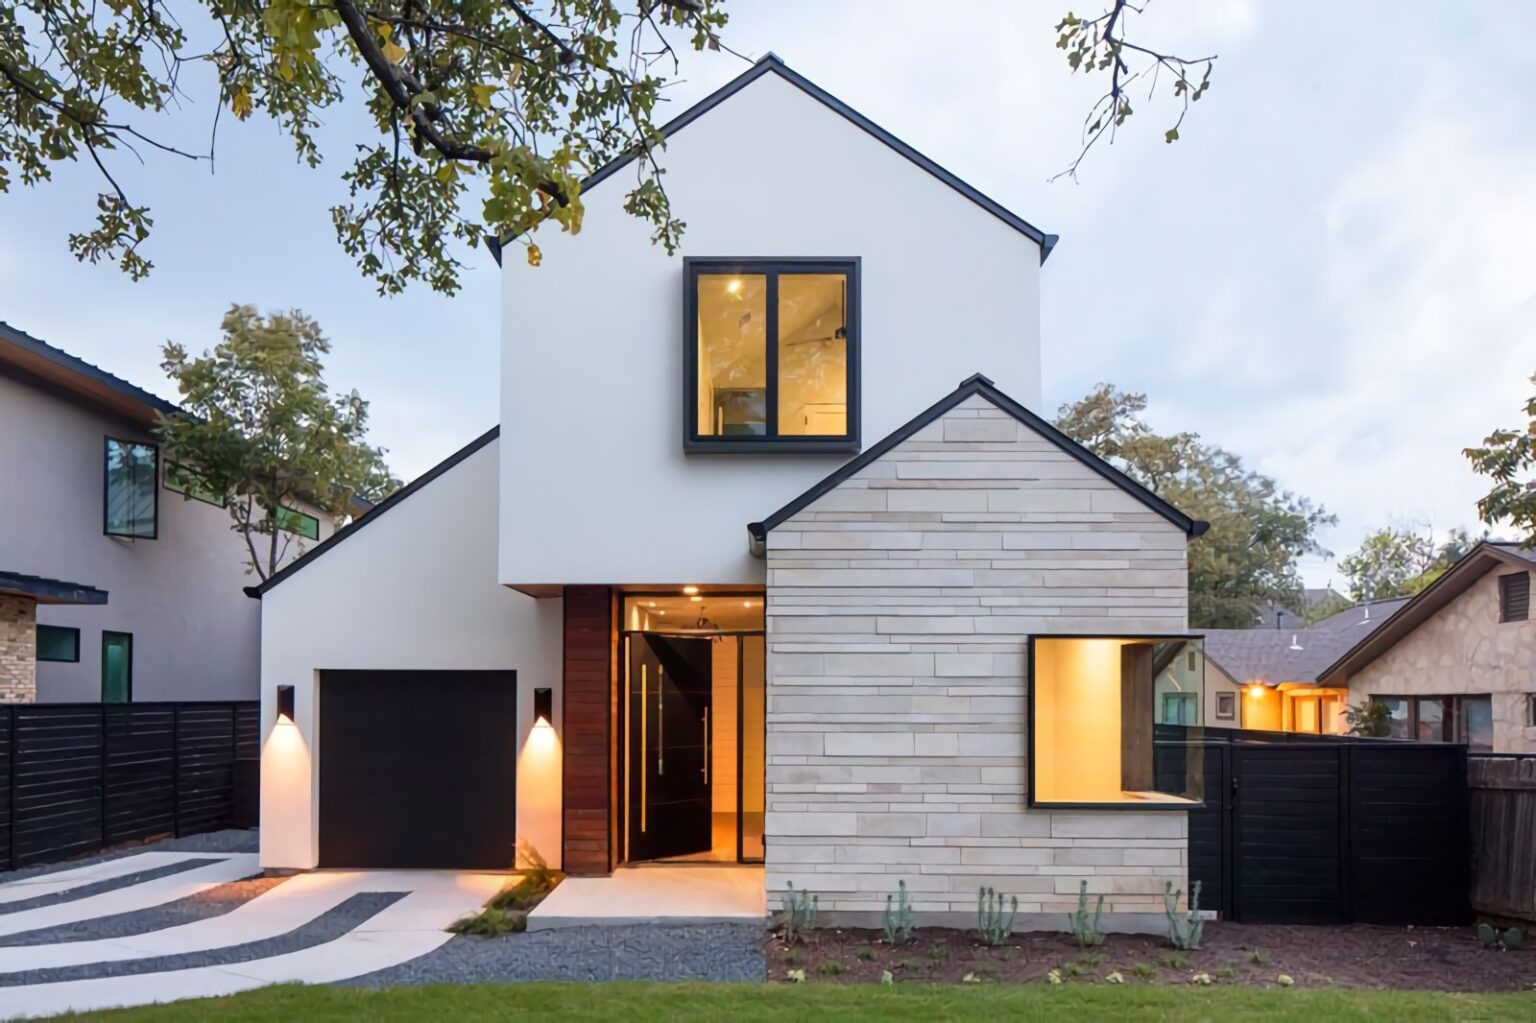 Desain rumah minimalis tampak depan